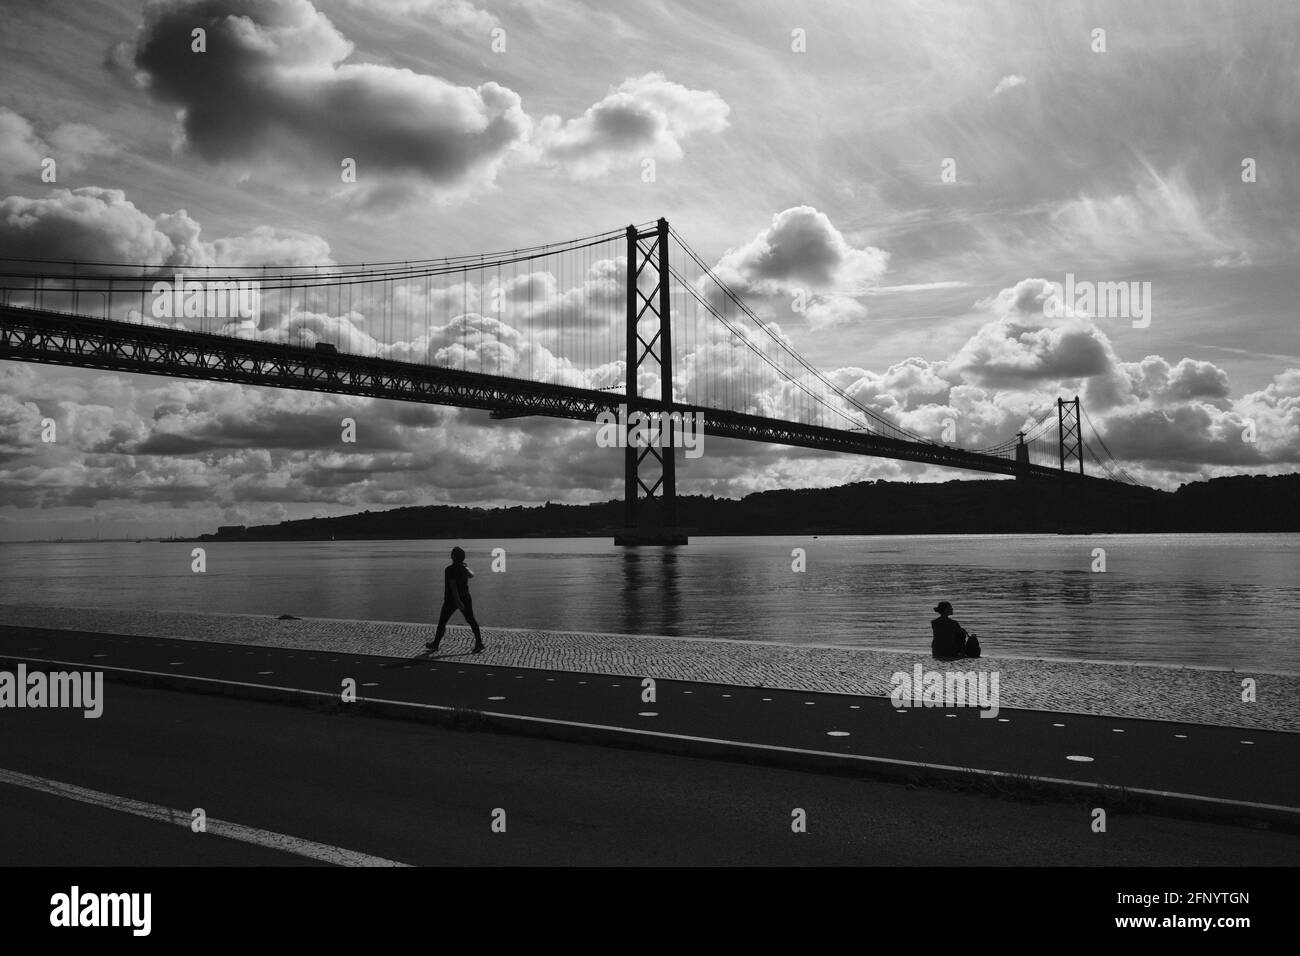 Silhouette de deux personnes se détendant au bord de la rivière sous un ciel nuageux et ensoleillé à Lisbonne, Portugal. Banque D'Images